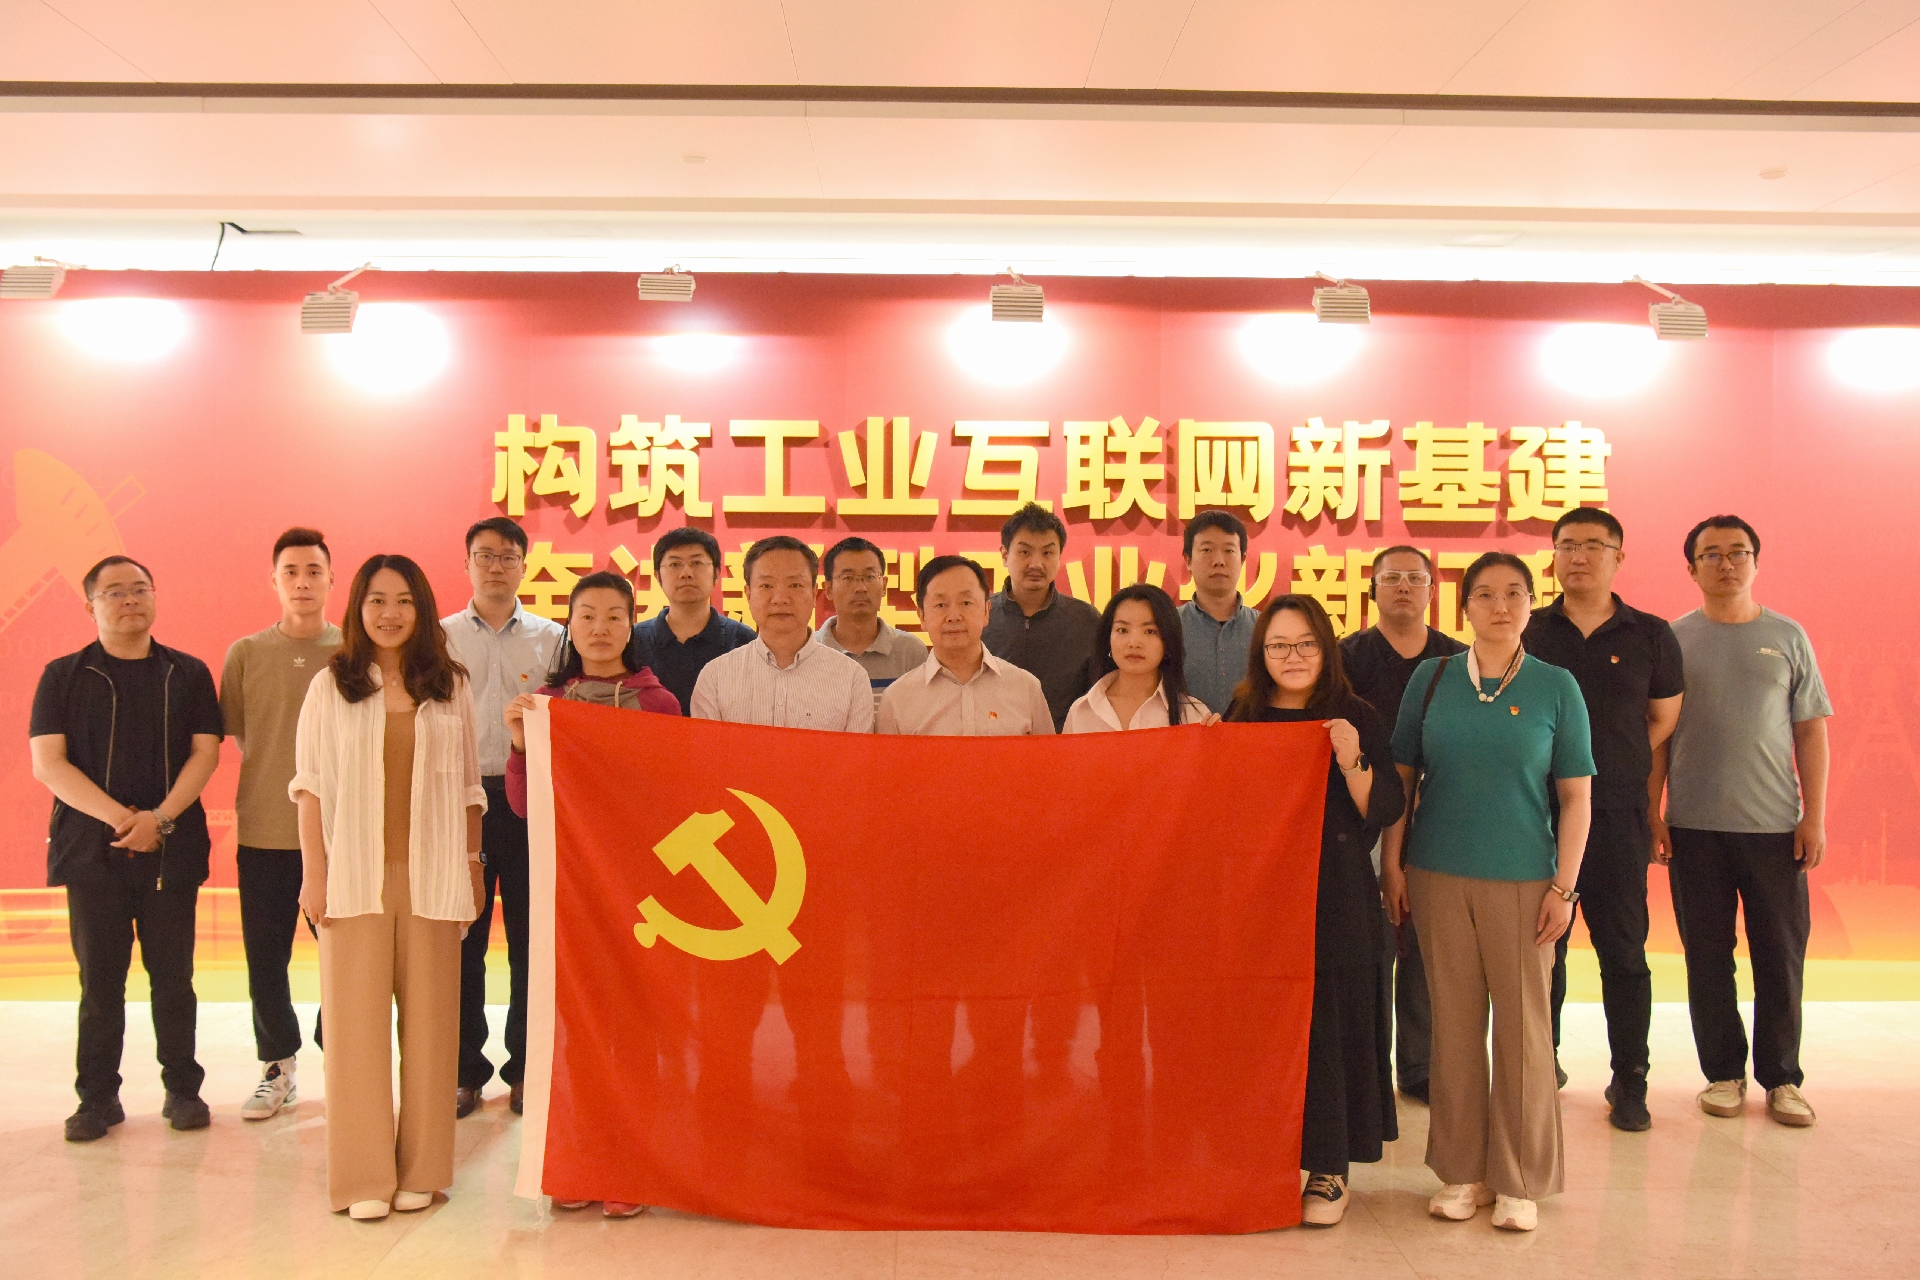 中国电子学会组织党员干部参观工业互联网创新发展成果展览